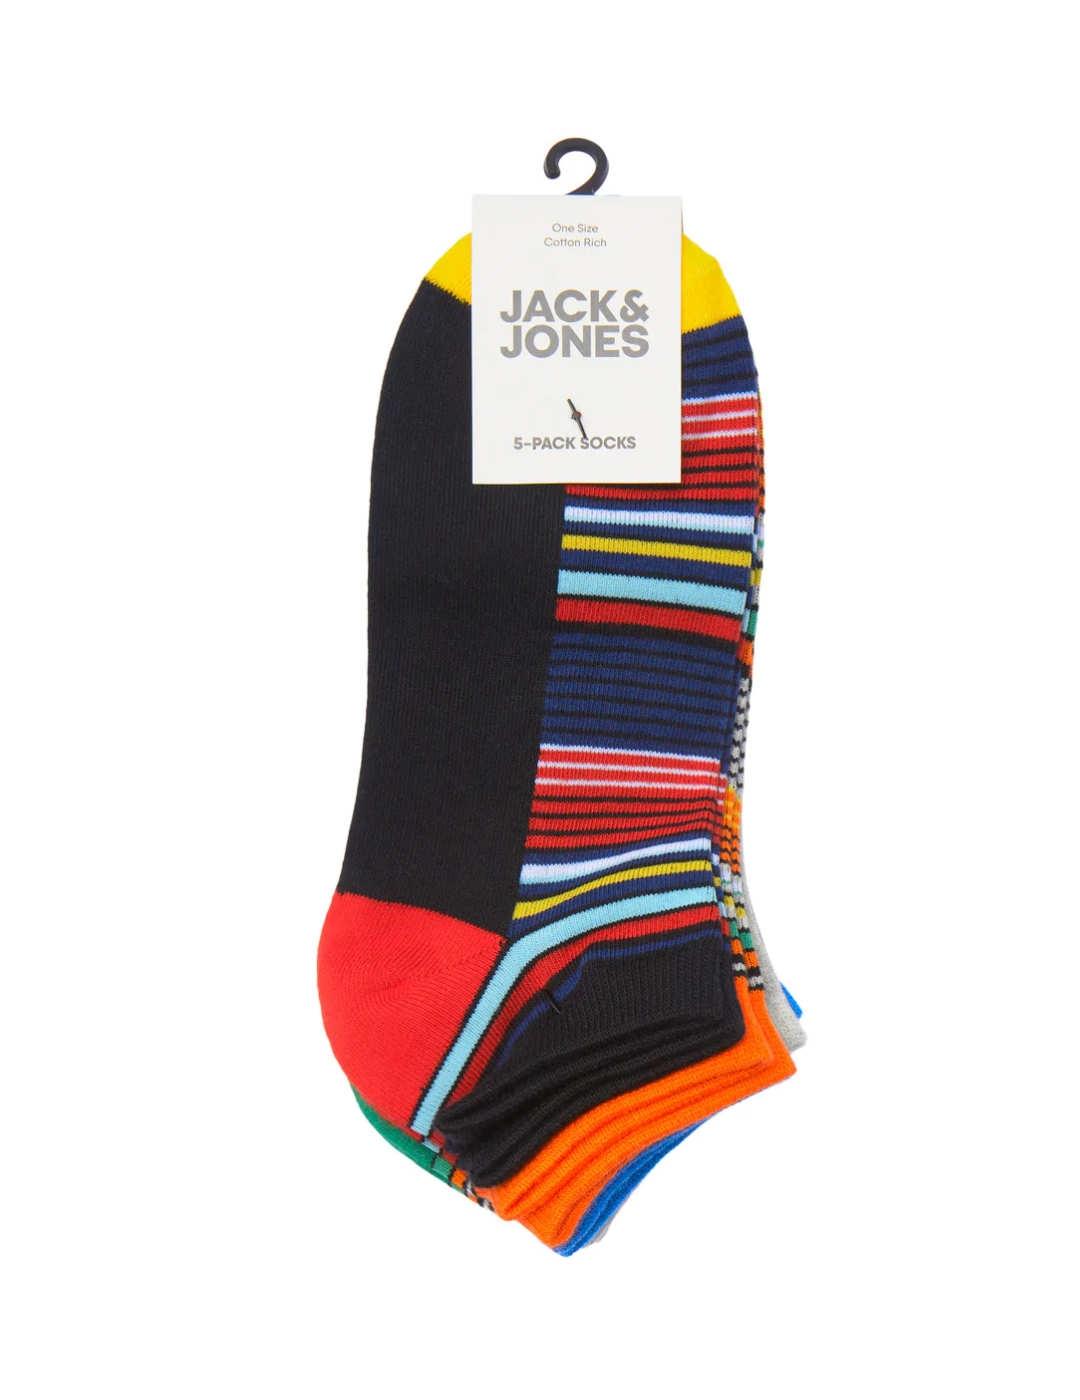 Pack de 5 calcetines Jack&Jones Claagon -a